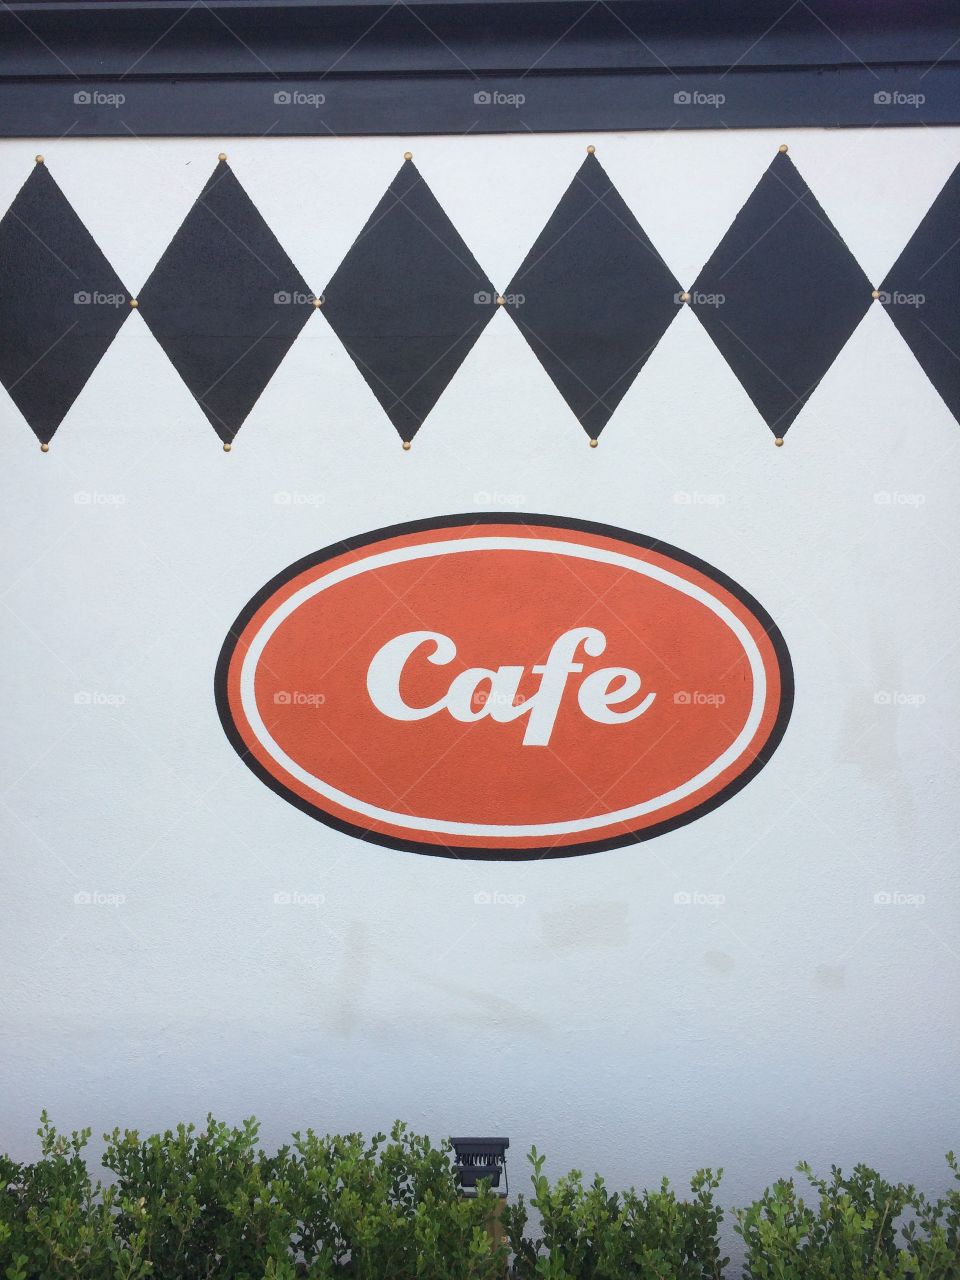 Cafe signage